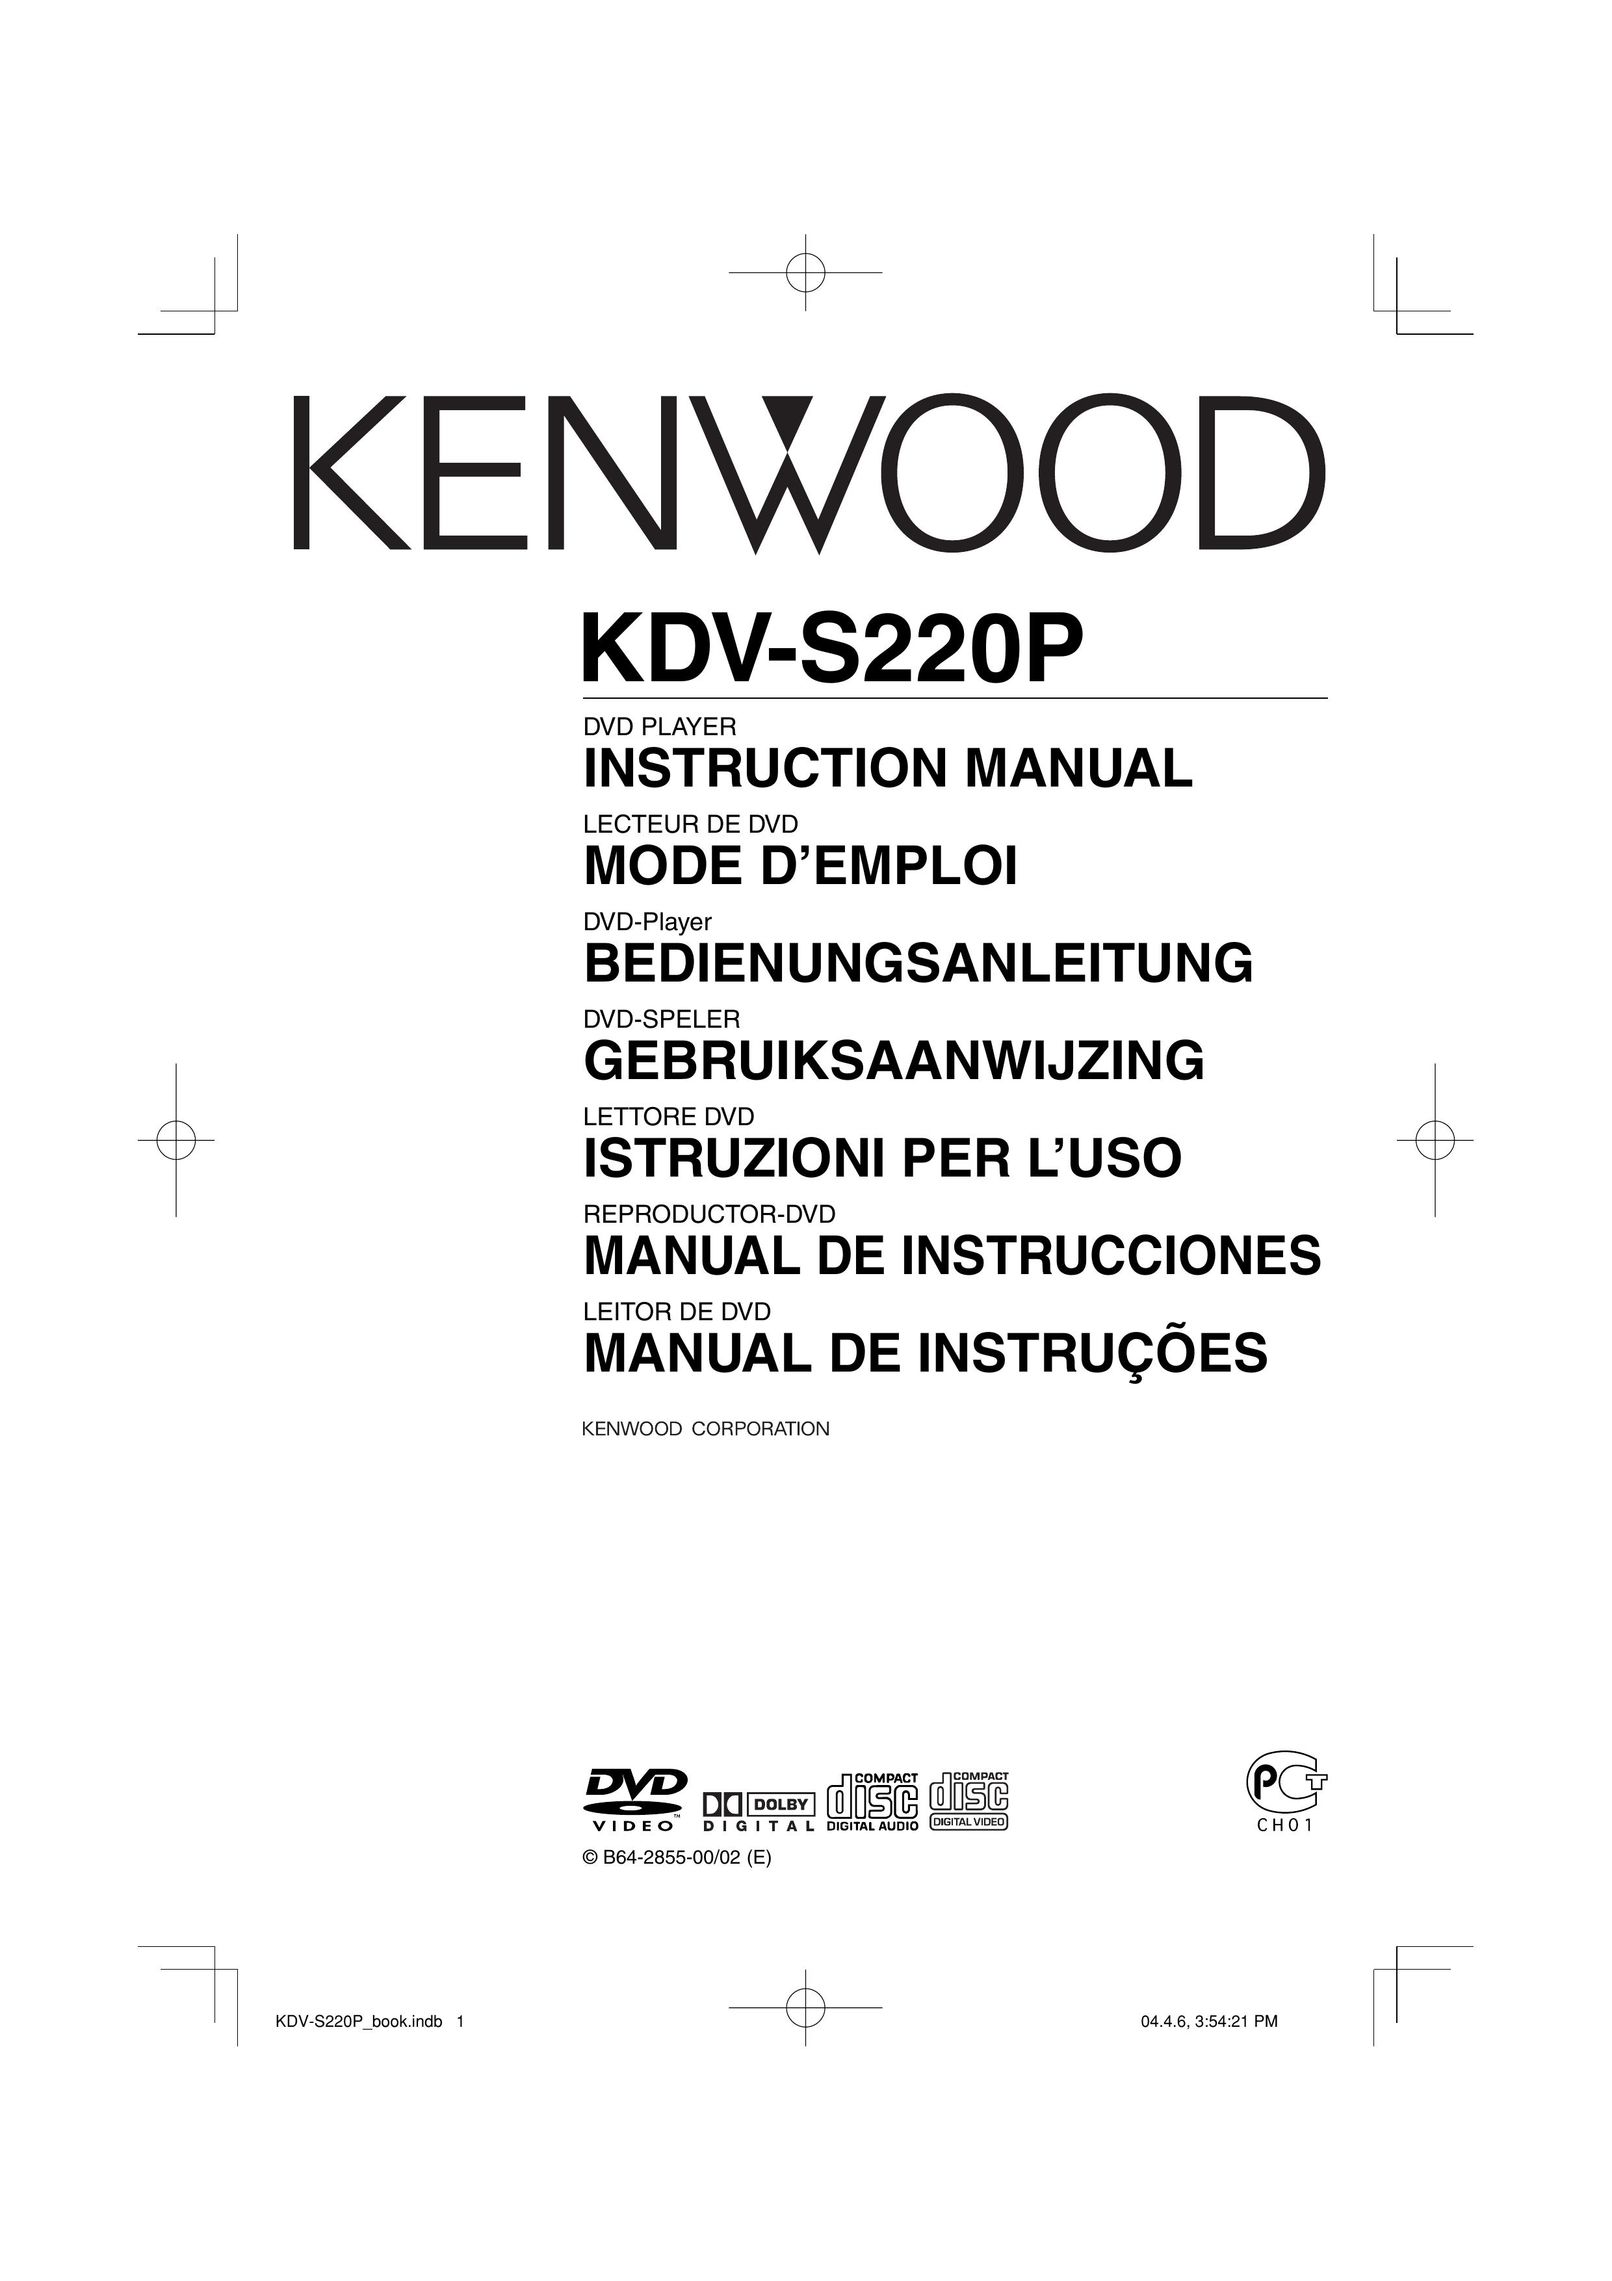 Kenwood KDV-S220P DVD Player User Manual